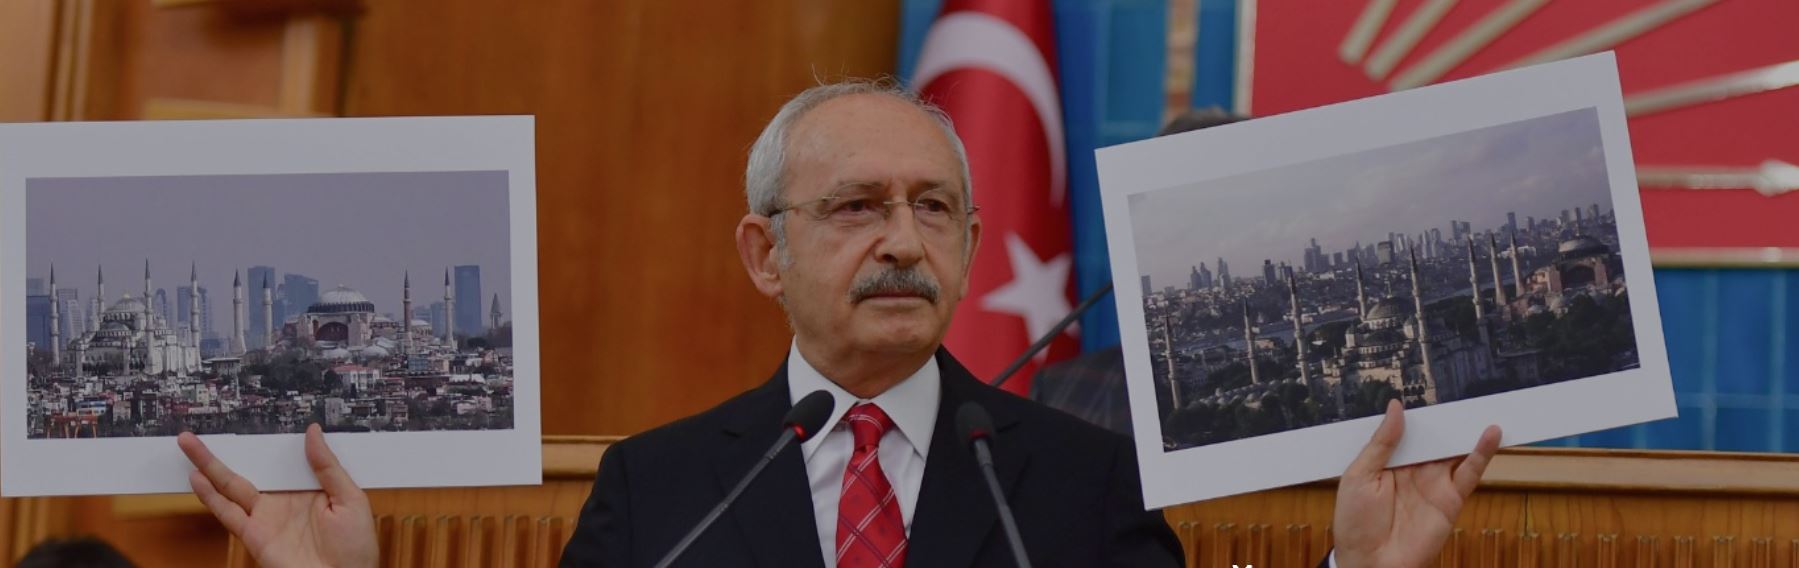 CHP Genel Başkanı Kemal Kılıçdaroğlu’nun TBMM Grup Toplantısında Konuştu